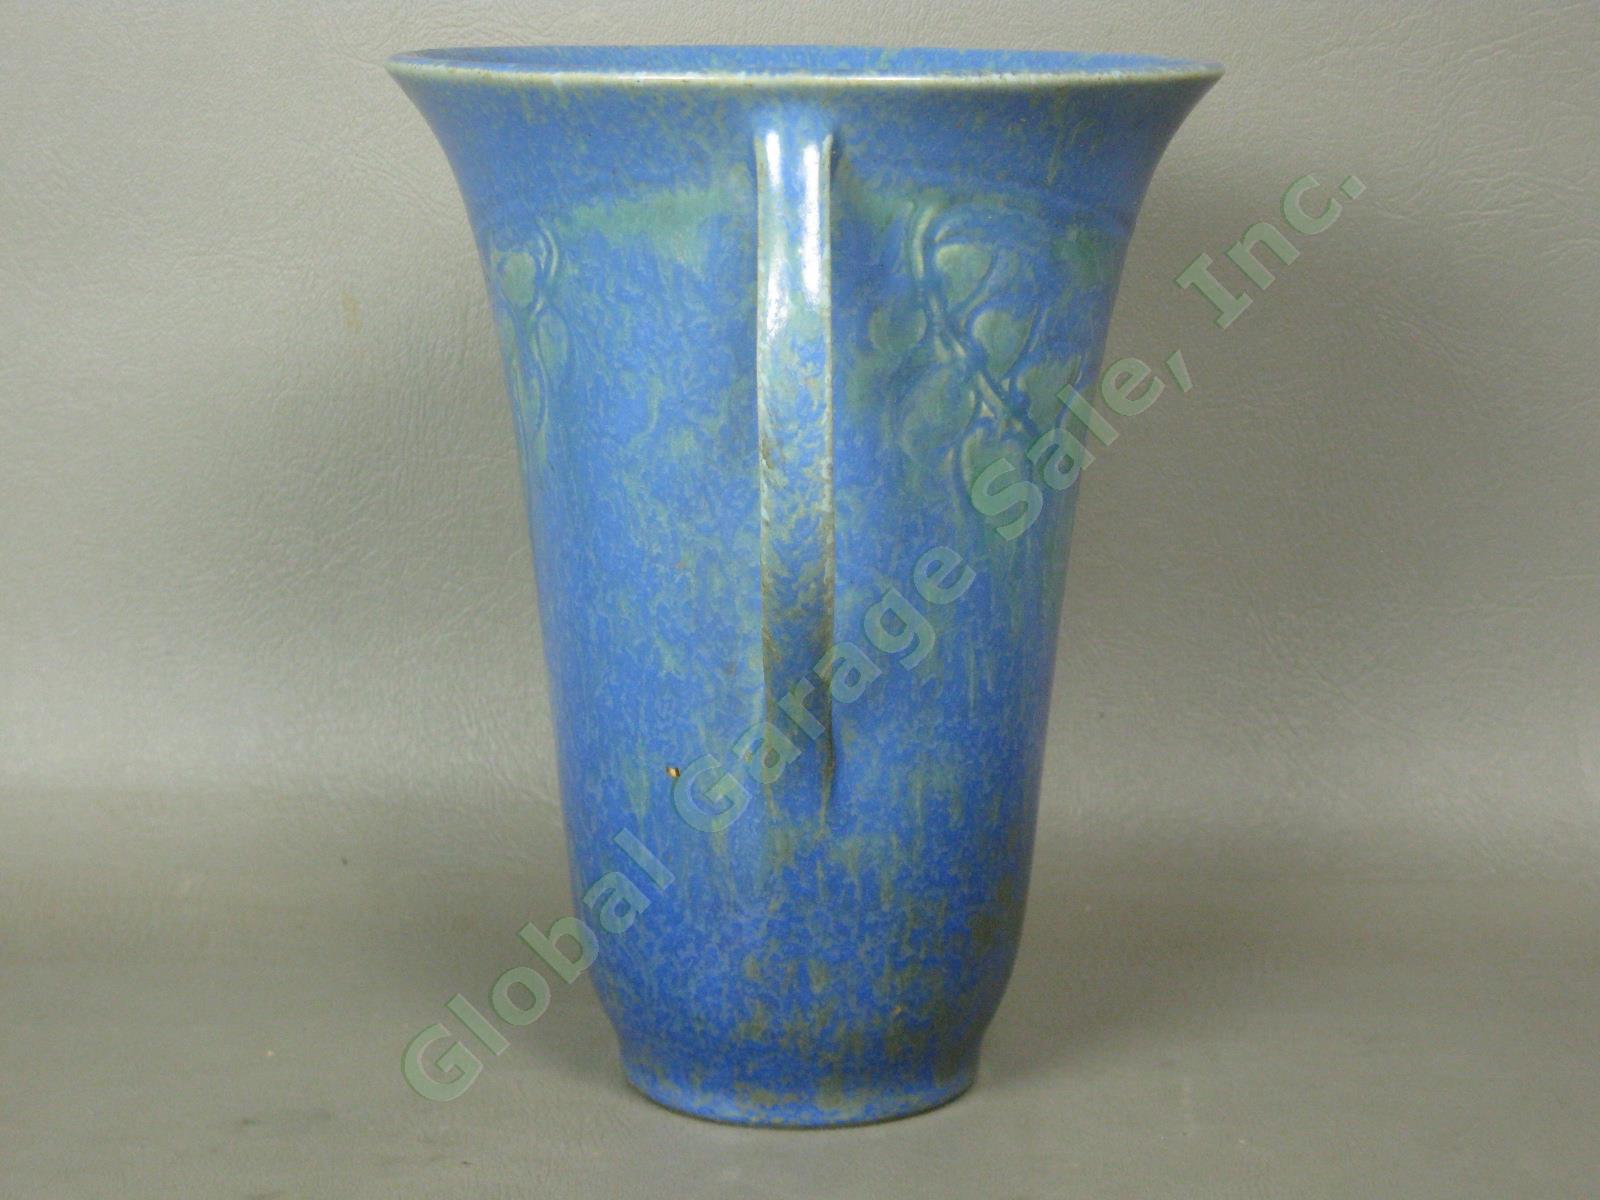 Vintage 1920s-1930s Roseville Pottery Mottled Blue Green Vase Paper Label NO RES 3